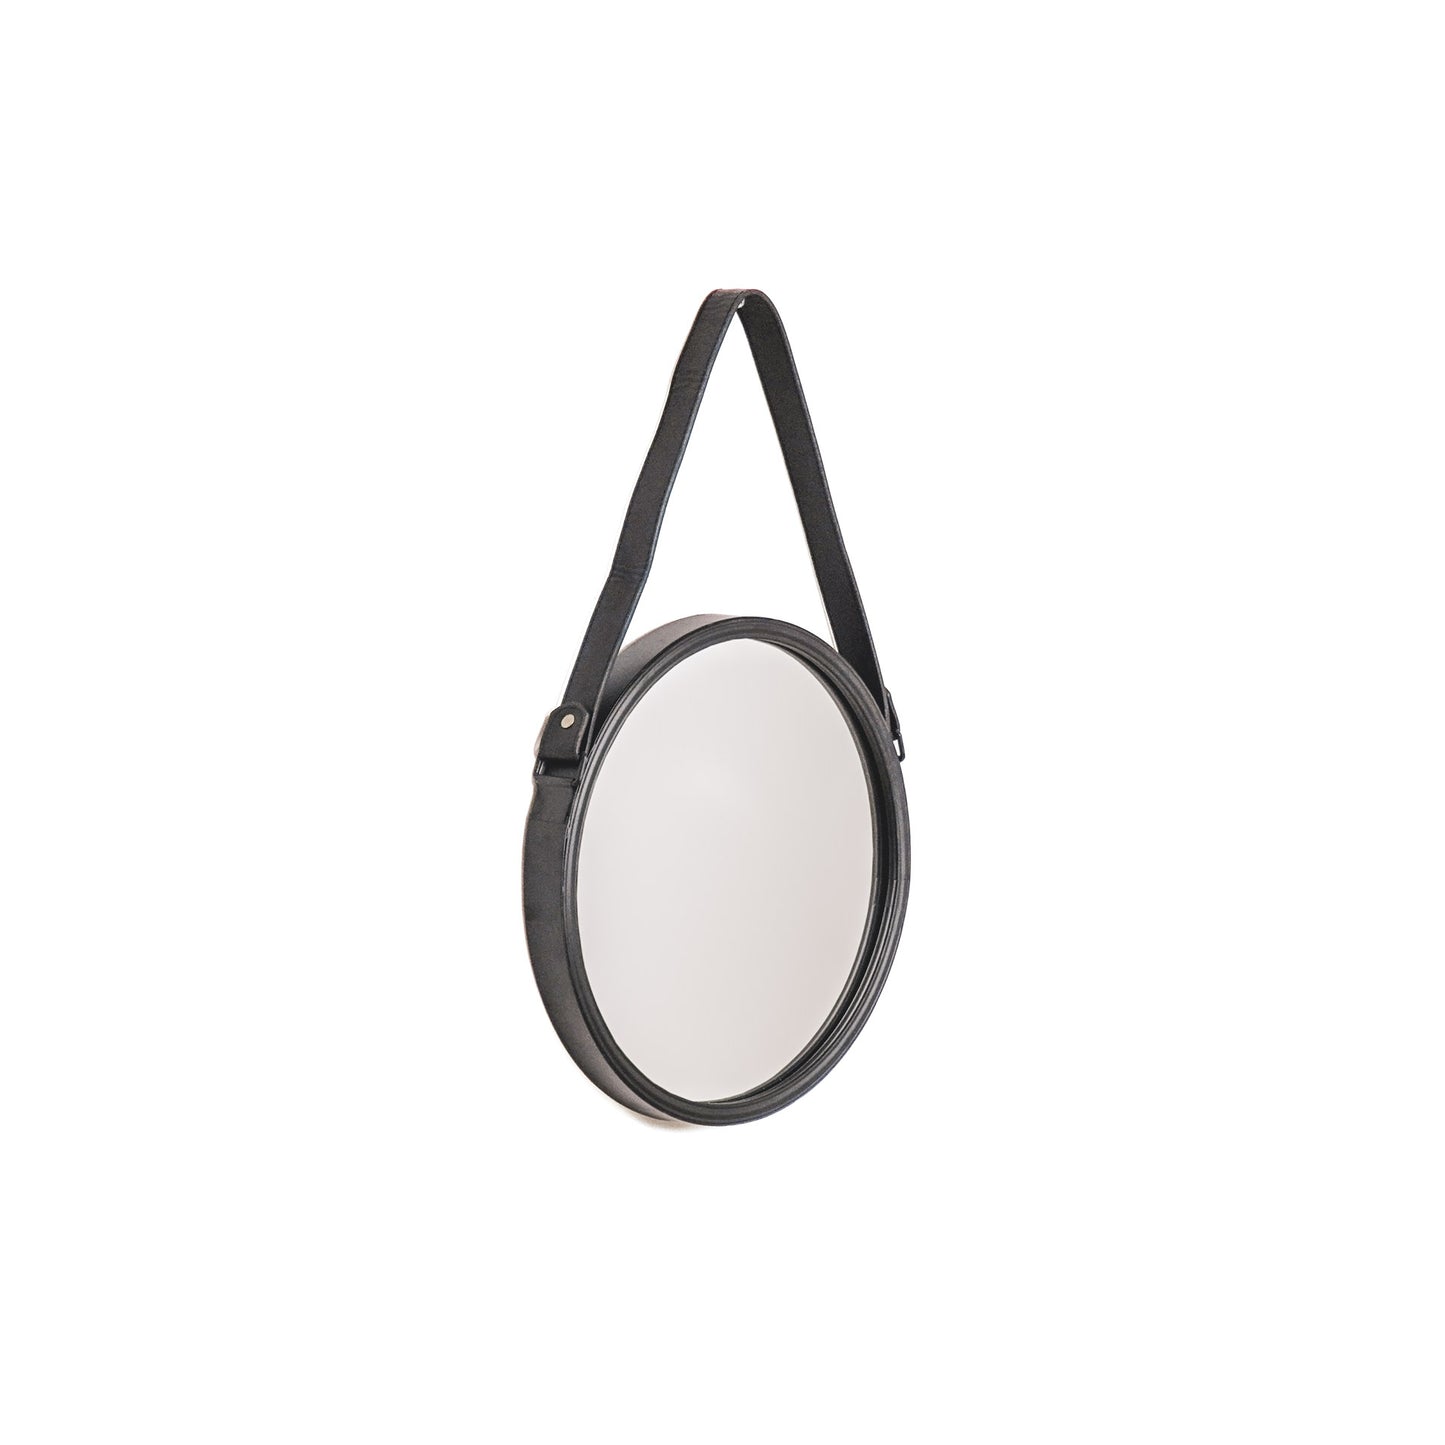 Housevitamin Round Mirror Metal - Black - 30cm